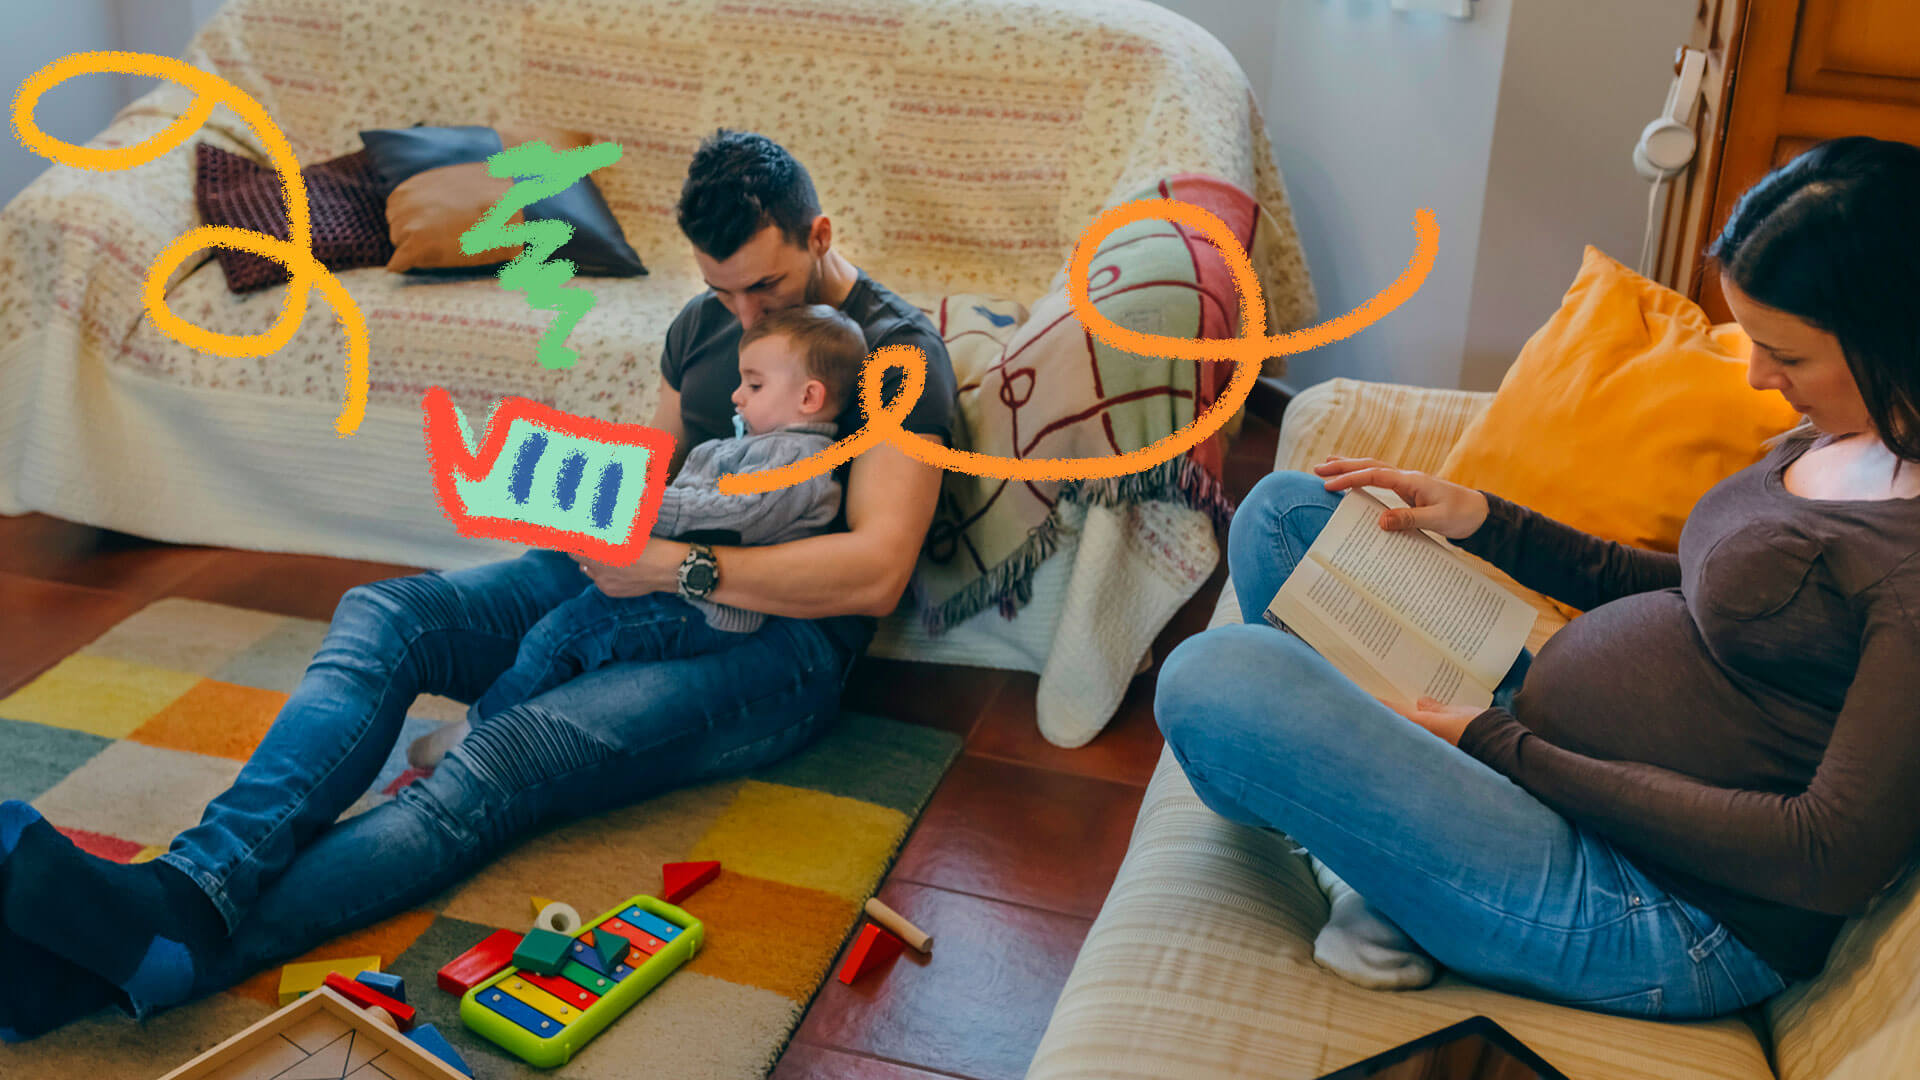 Sentados numa sala com brinquedos espalhados pelo chão, um pai e um bebês leem um livro. No sofá ao lado, a mãe também lê um livro.